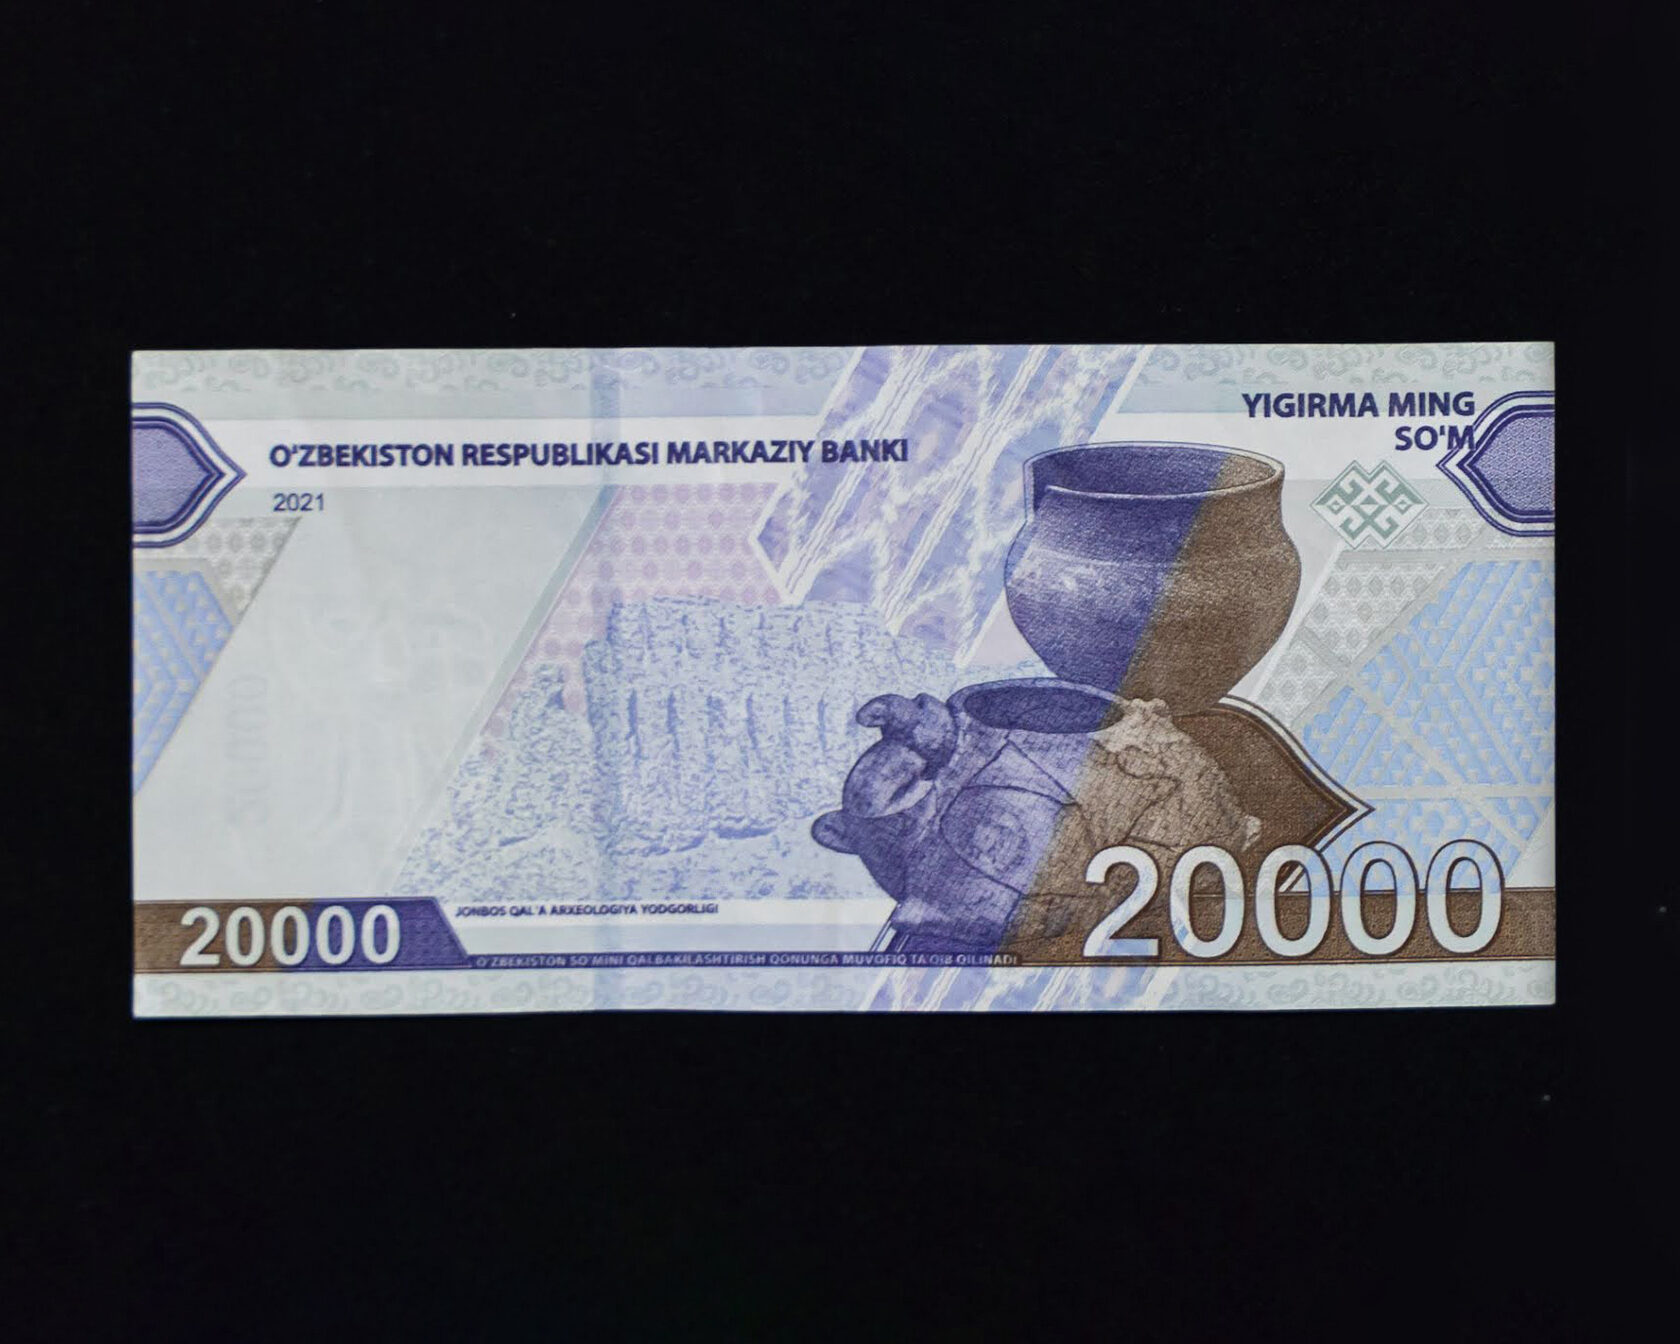 5000 узбекских в рублях